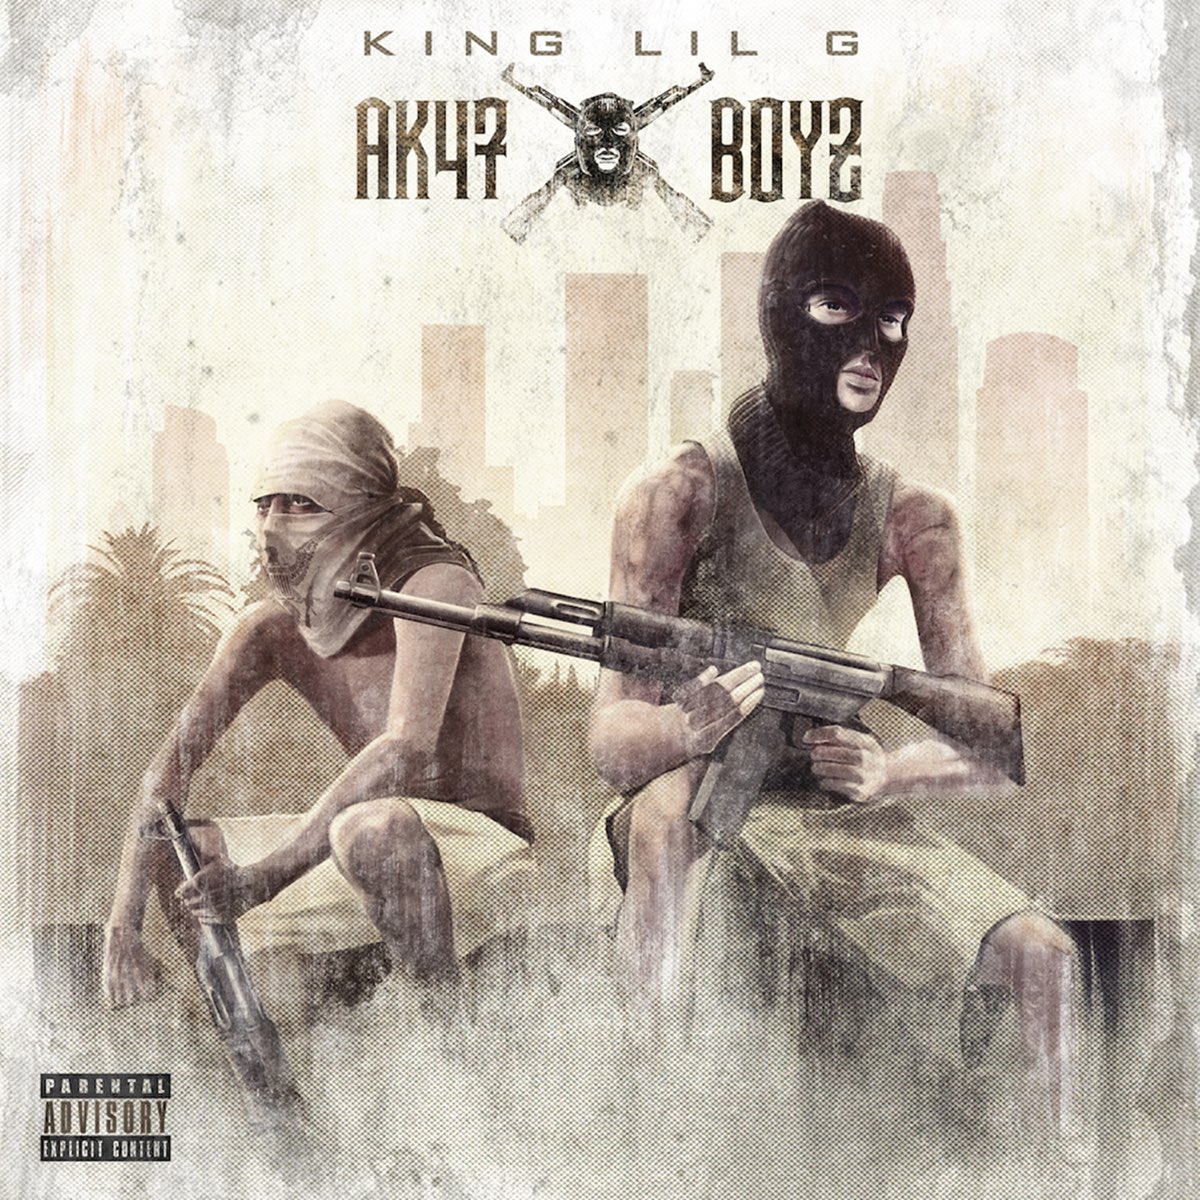 AK47 Boyz - Album by King Lil G - Apple Music